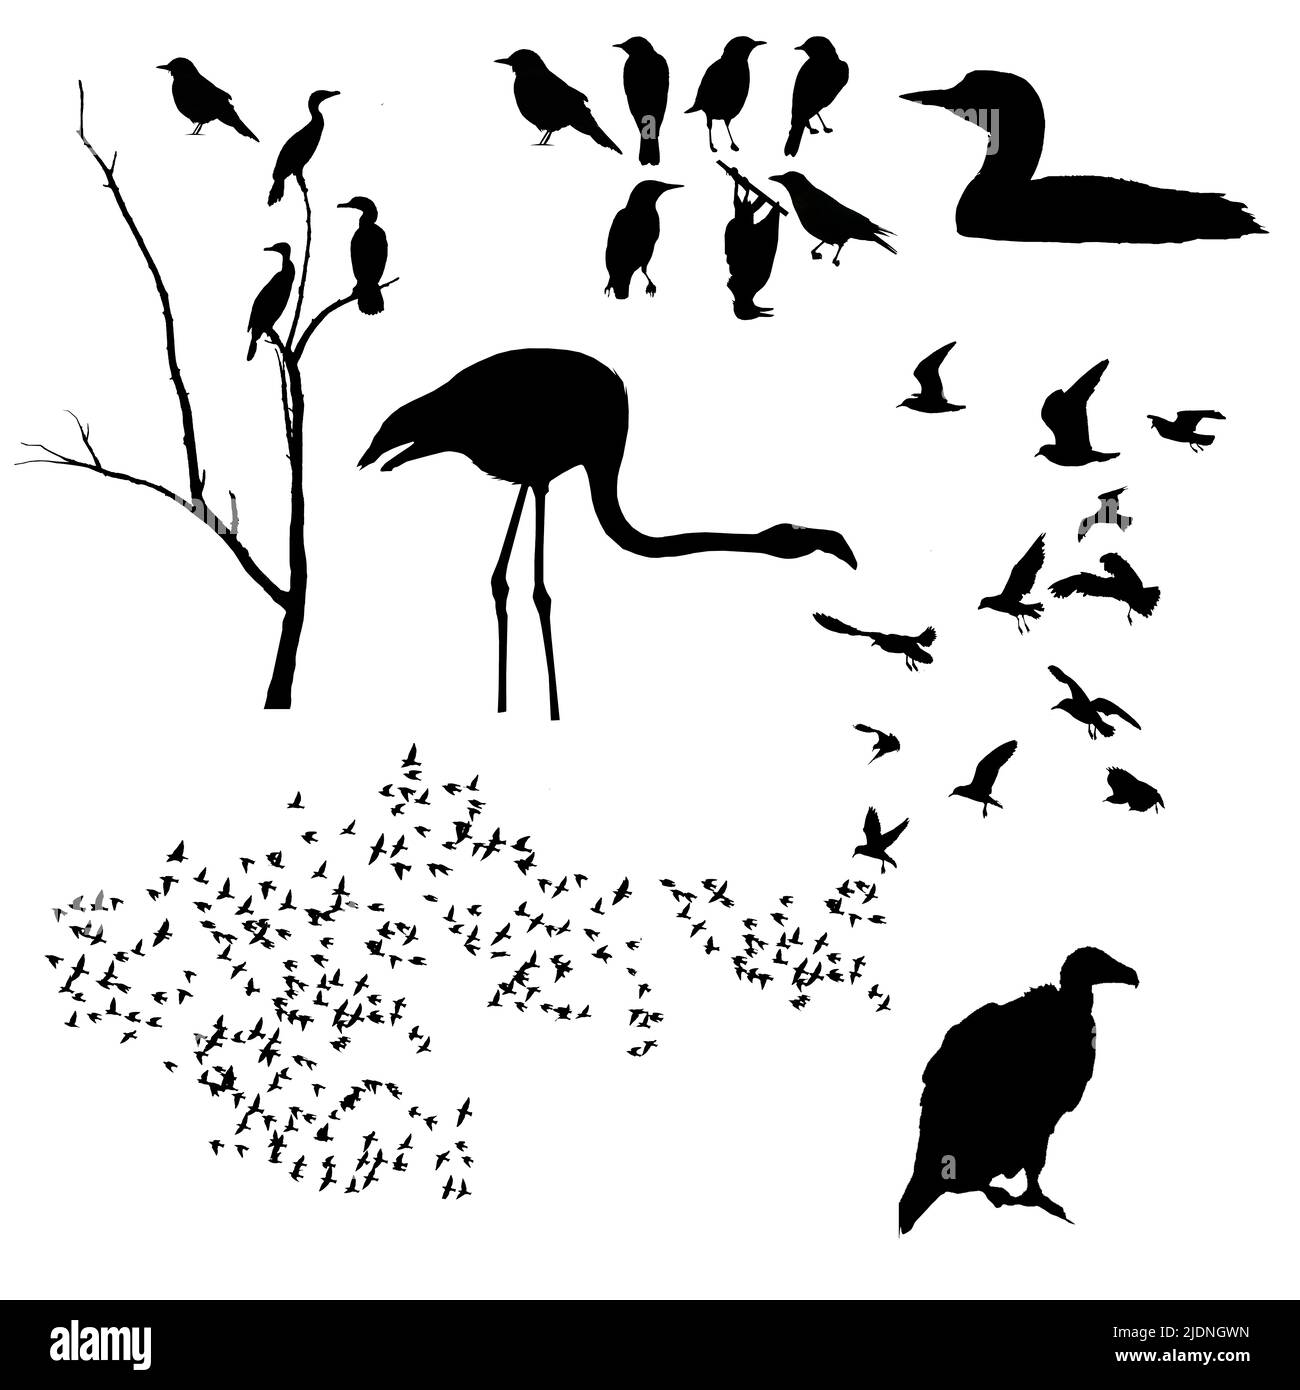 Cormoranes, buitre de pavo, gaviotas, loon, flamencos, los almidones, y más aves son vistos como ilustraciones 3-d y son para el uso como recurso gráfico. Foto de stock